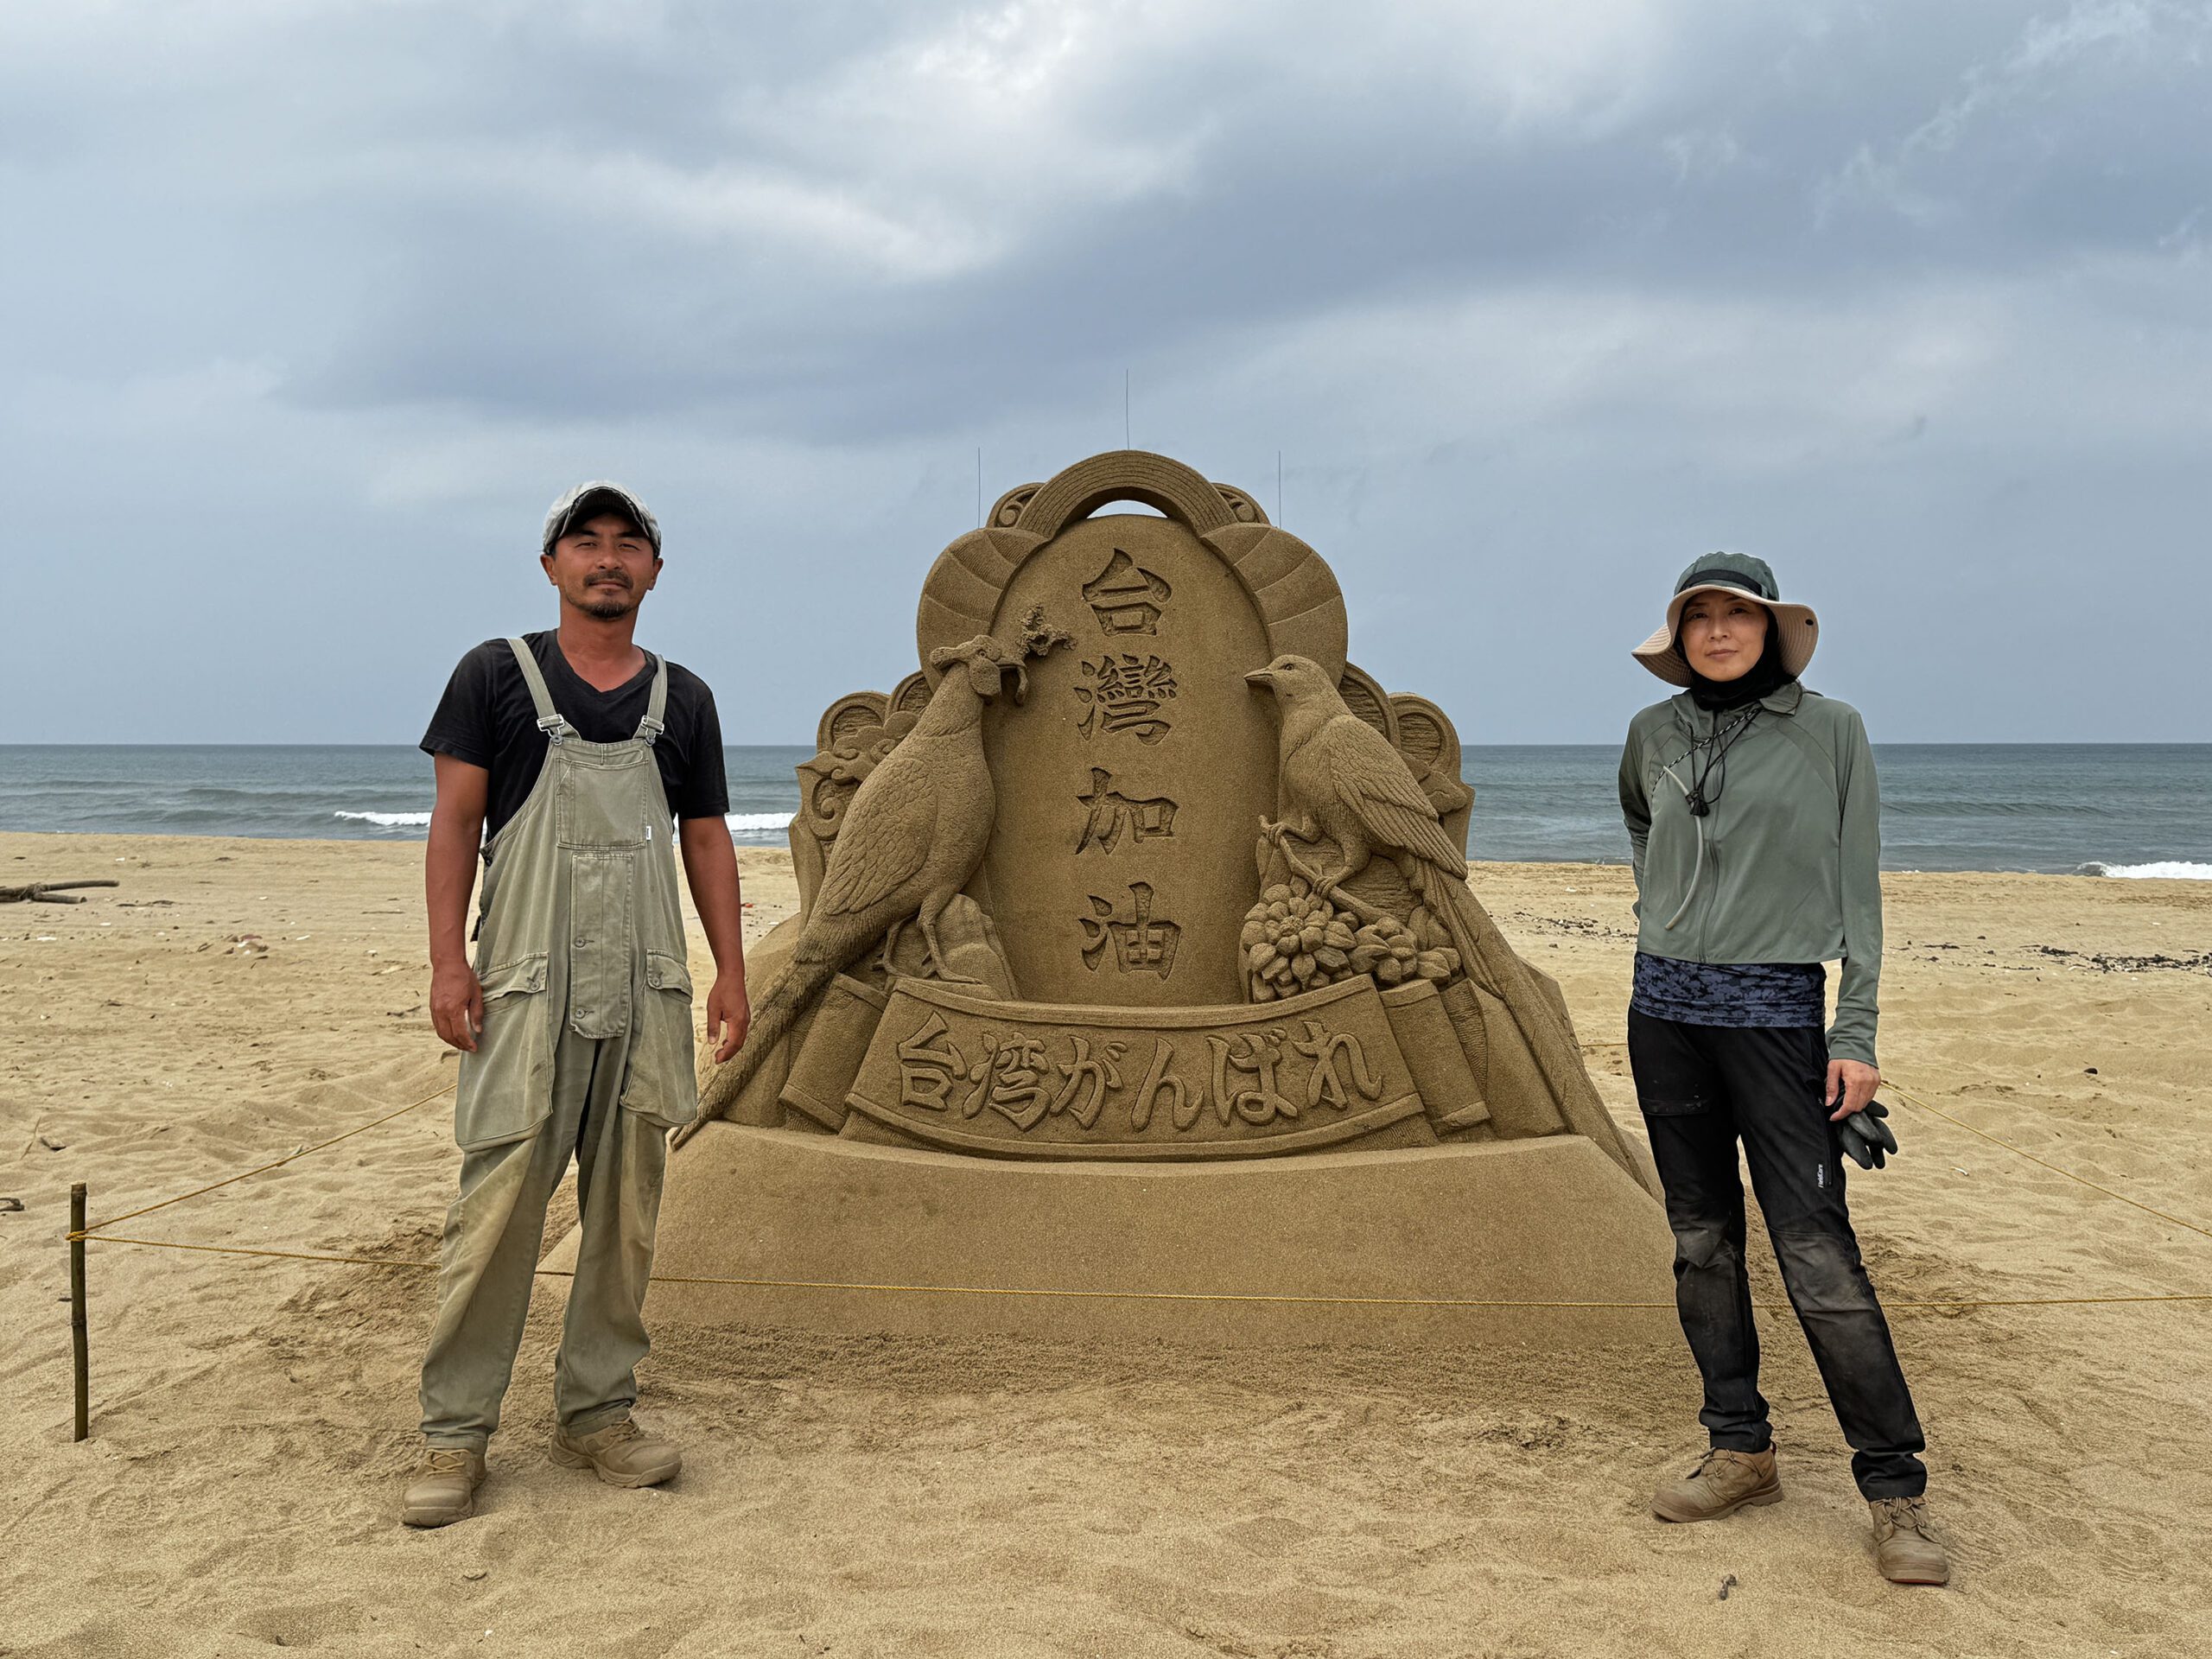 影音/感念311大地震台灣對日本伸出援手 日沙雕師創做沙雕祝福台灣